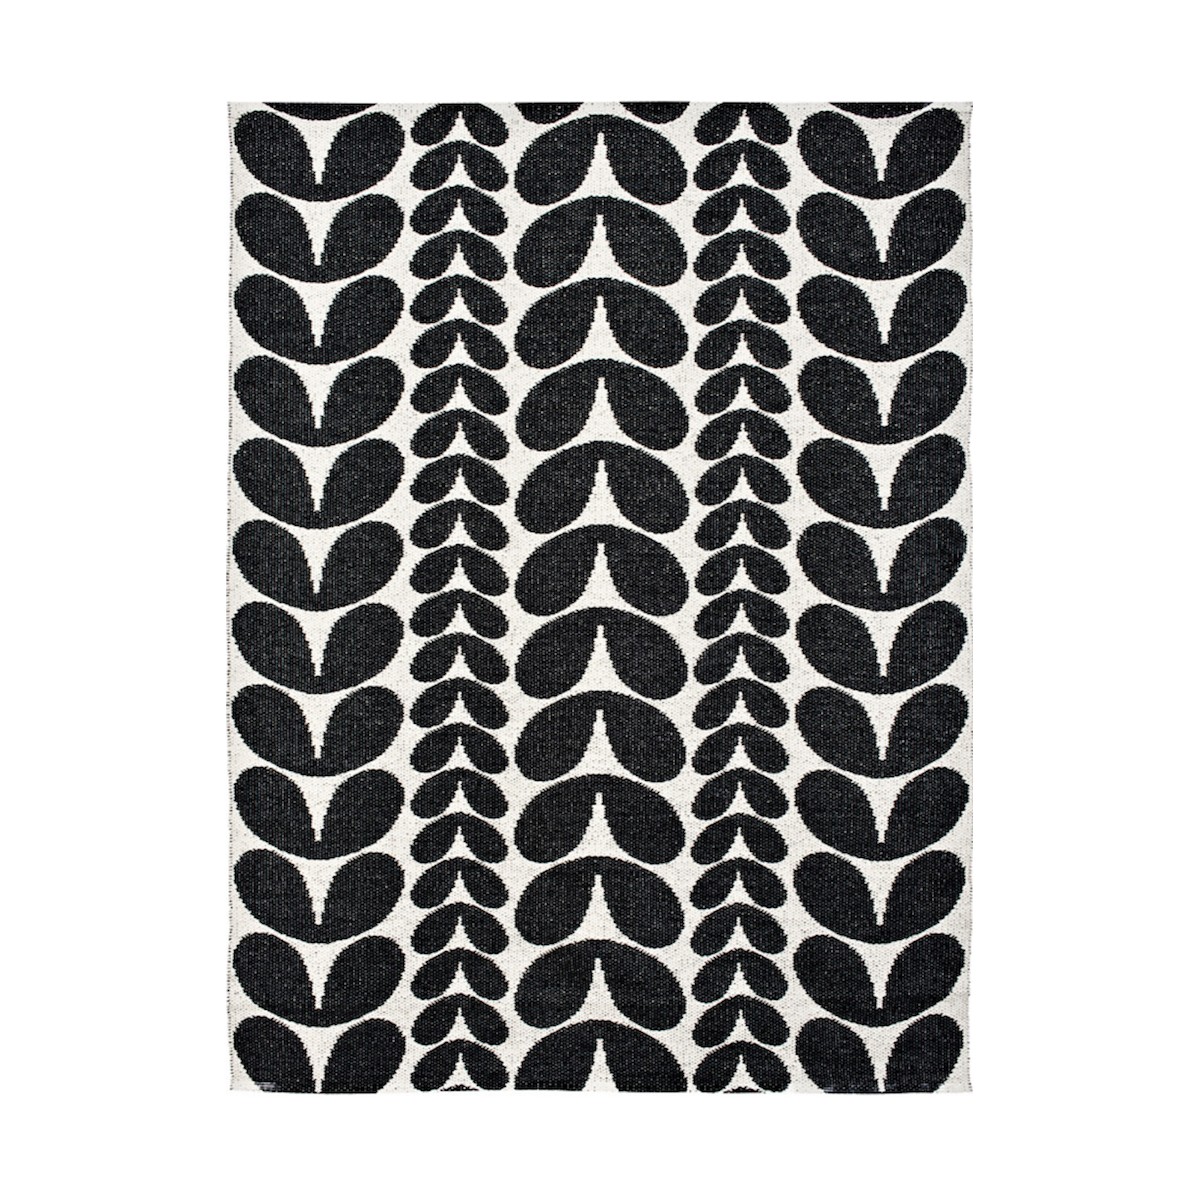 noir - 150x200cm - Karin - tapis plastique